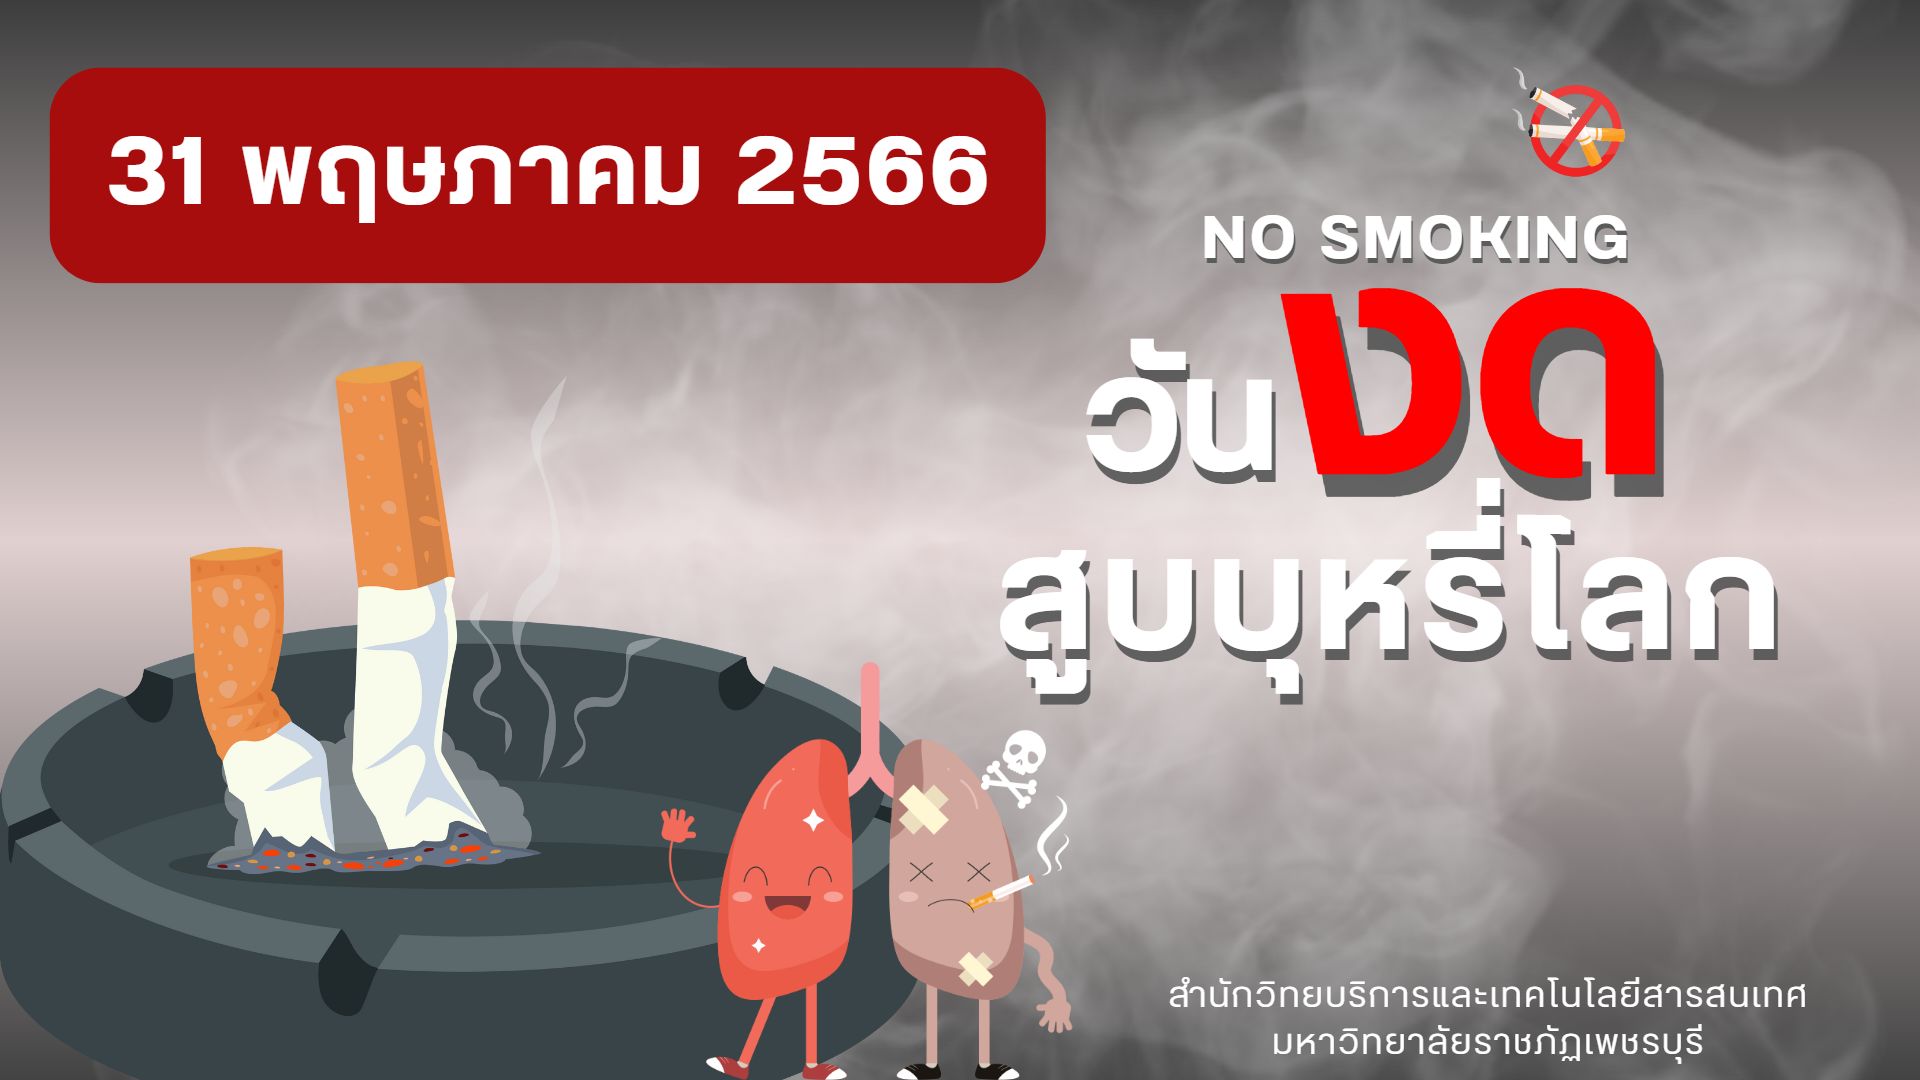 วันงดสูบบุหรี่โลก”เนื่องในวันที่ 31 พฤษภาคม ร่วมกิจกรรมตอบคำถามรับแก้วน้ำลดโลกร้อน ในกิจกรรมส่งเสริมการอ่านออนไลน์